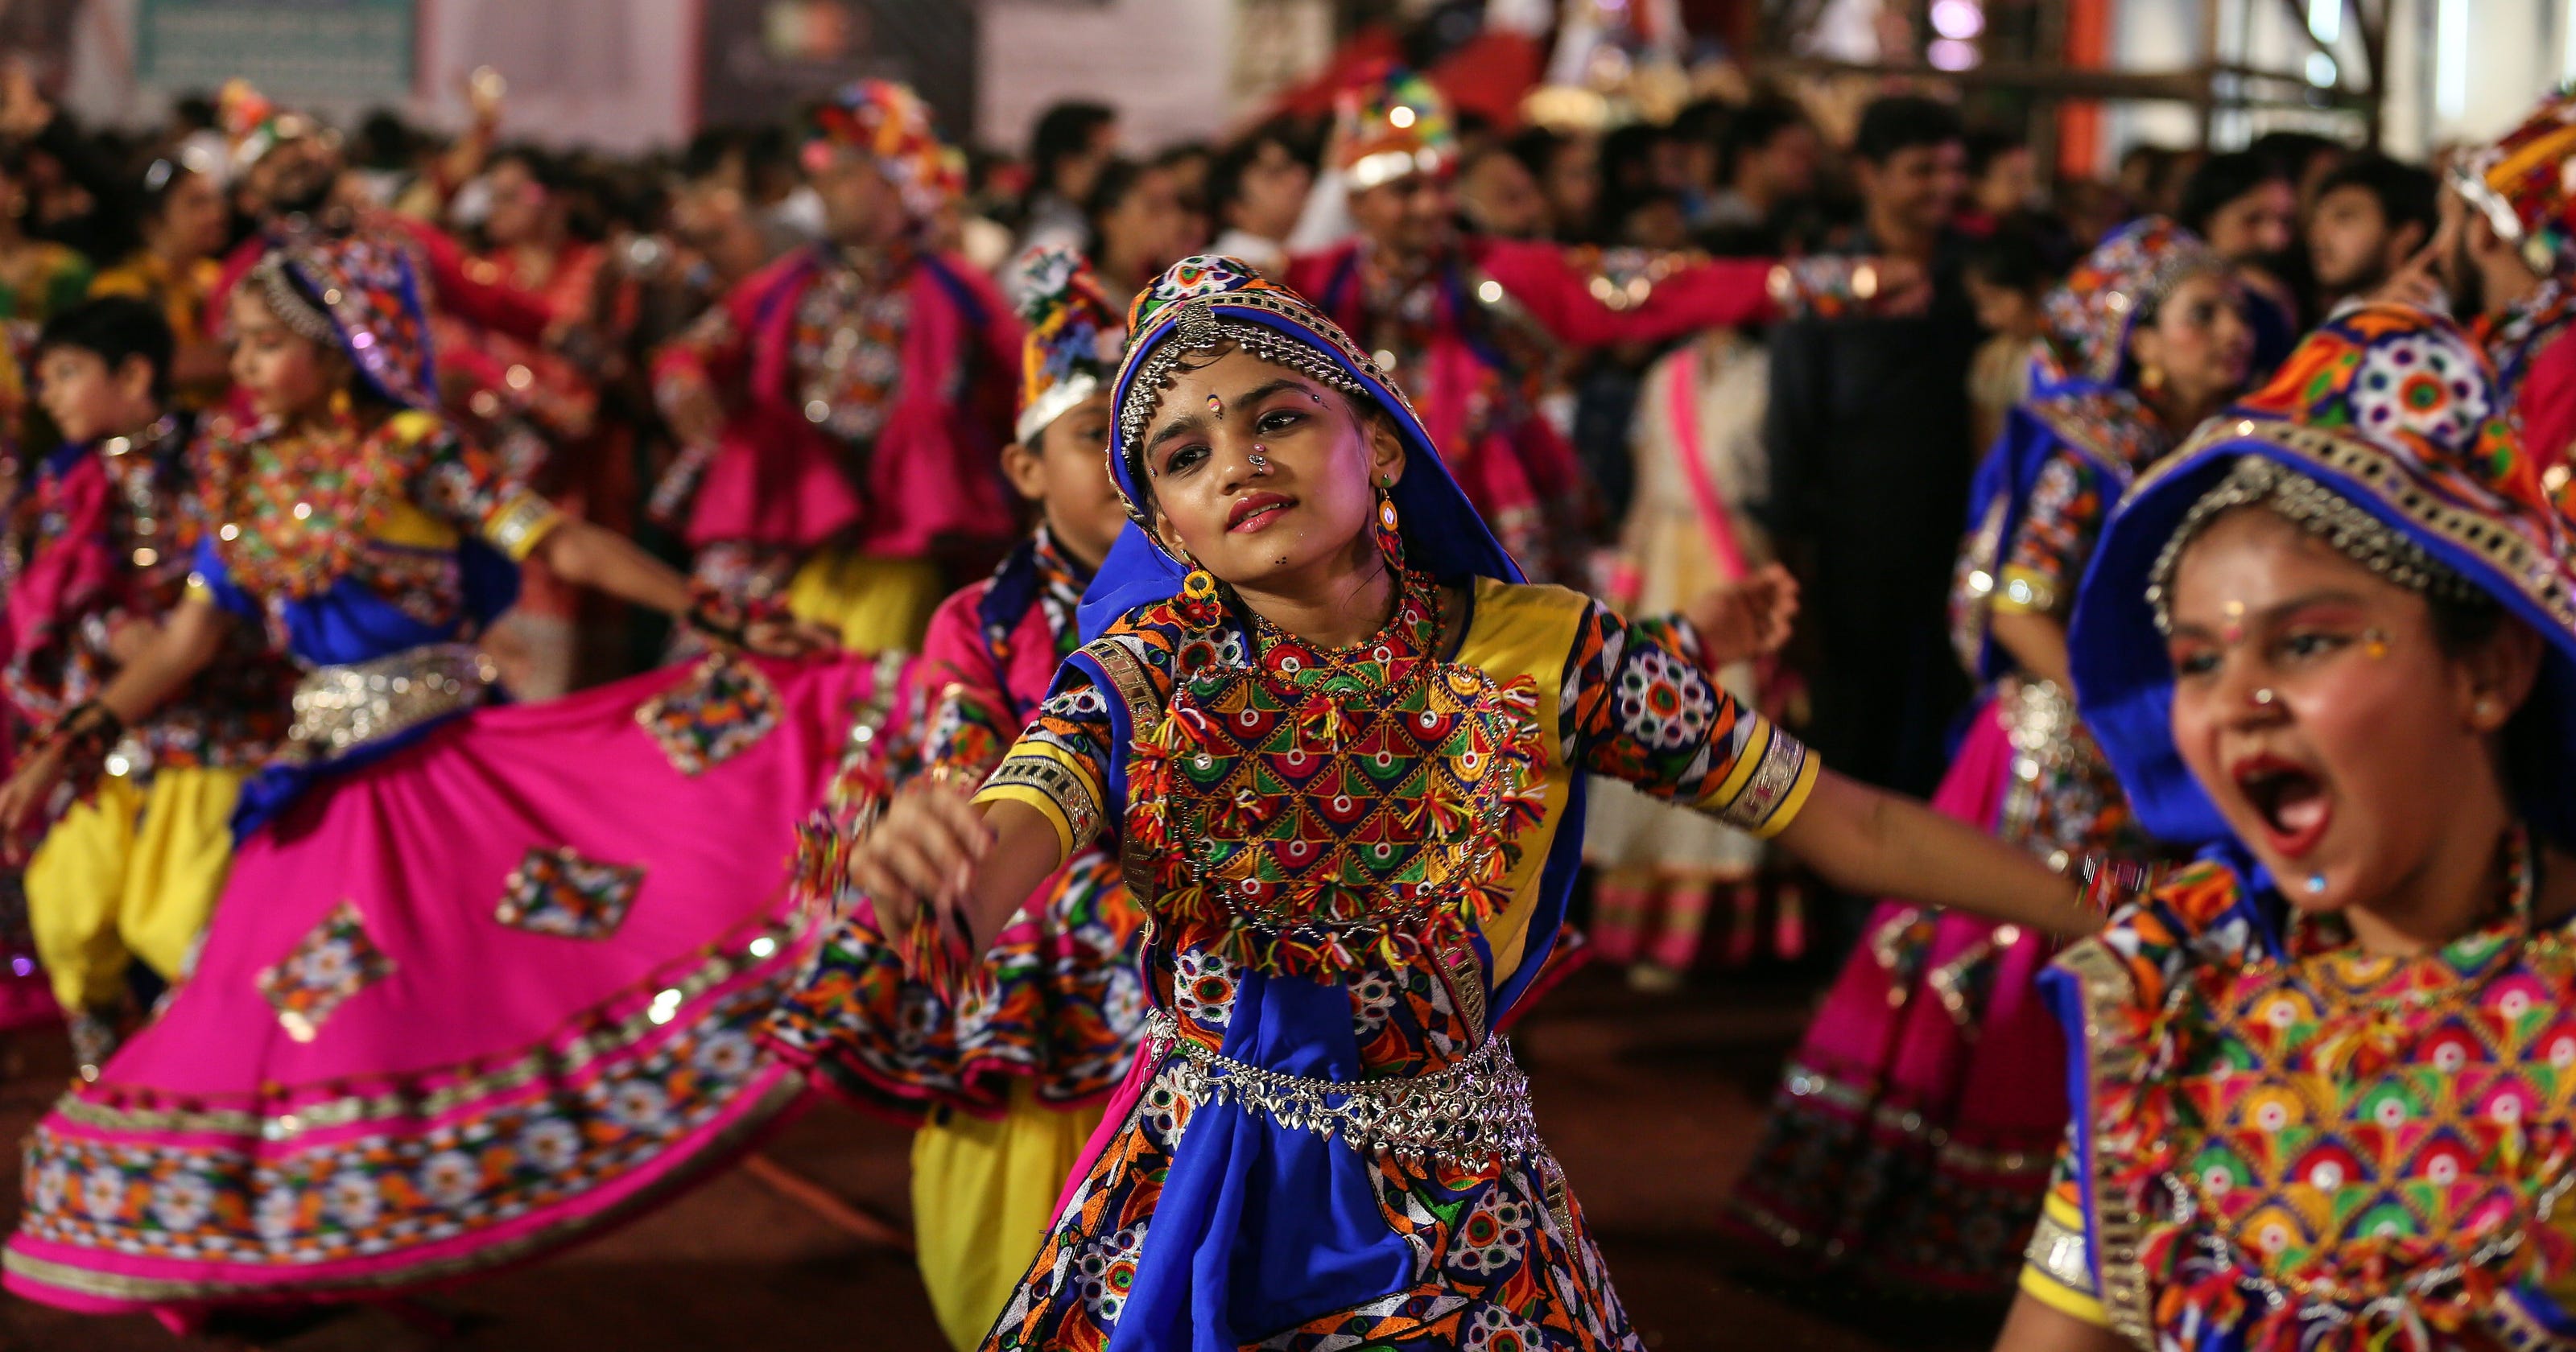 Image result for navratri celebration in india